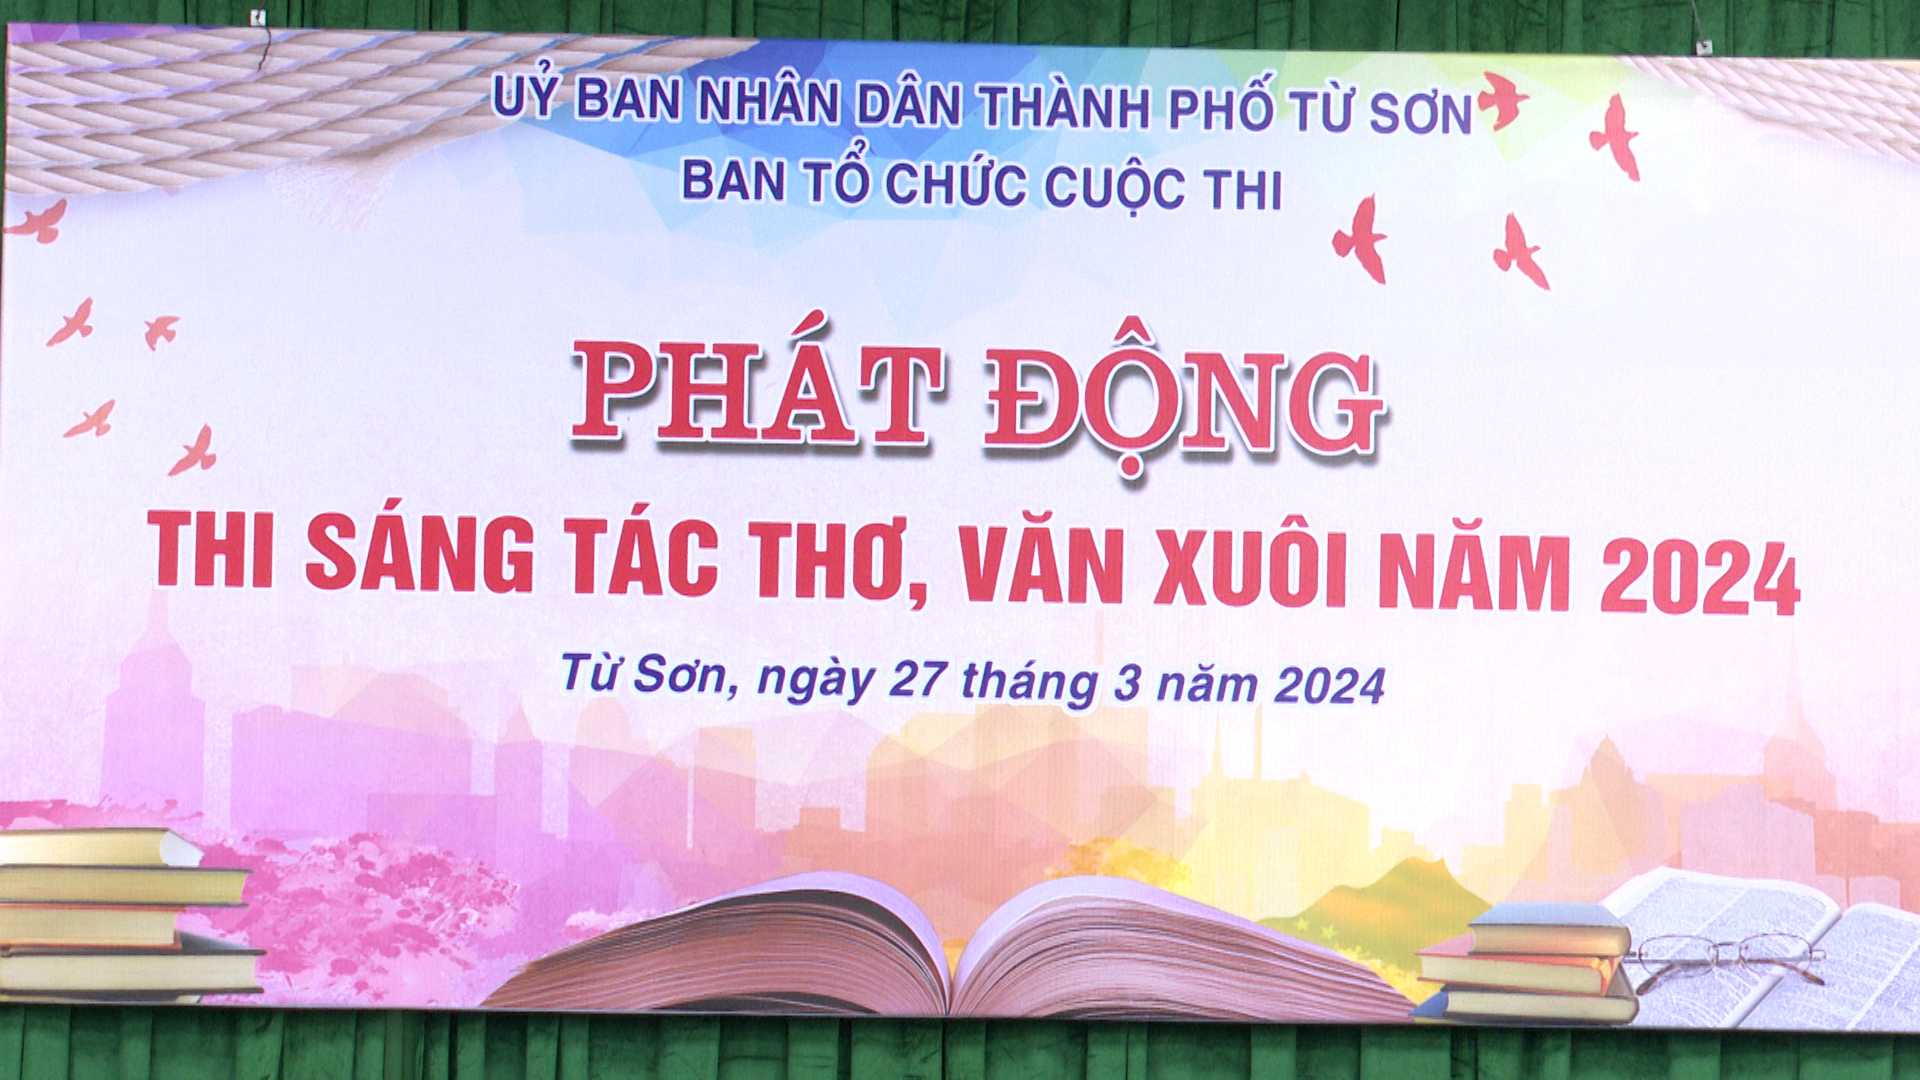 Thành phố Từ Sơn phát động cuộc thi thơ văn xuôi năm 2024